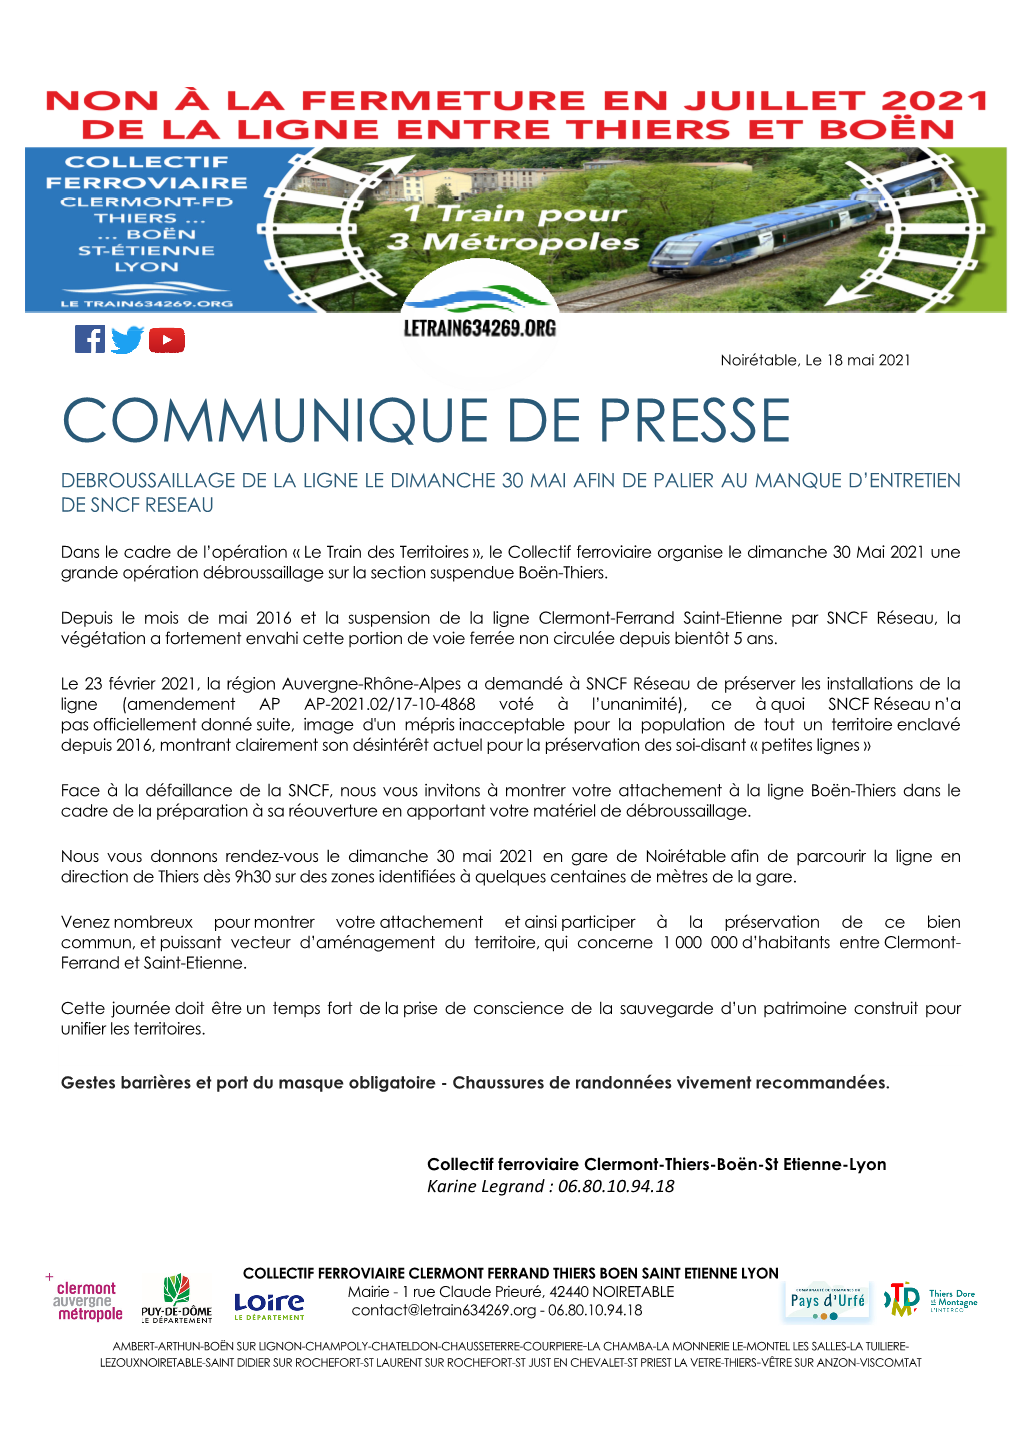 Communique De Presse Debroussaillage De La Ligne Le Dimanche 30 Mai Afin De Palier Au Manque D’Entretien De Sncf Reseau